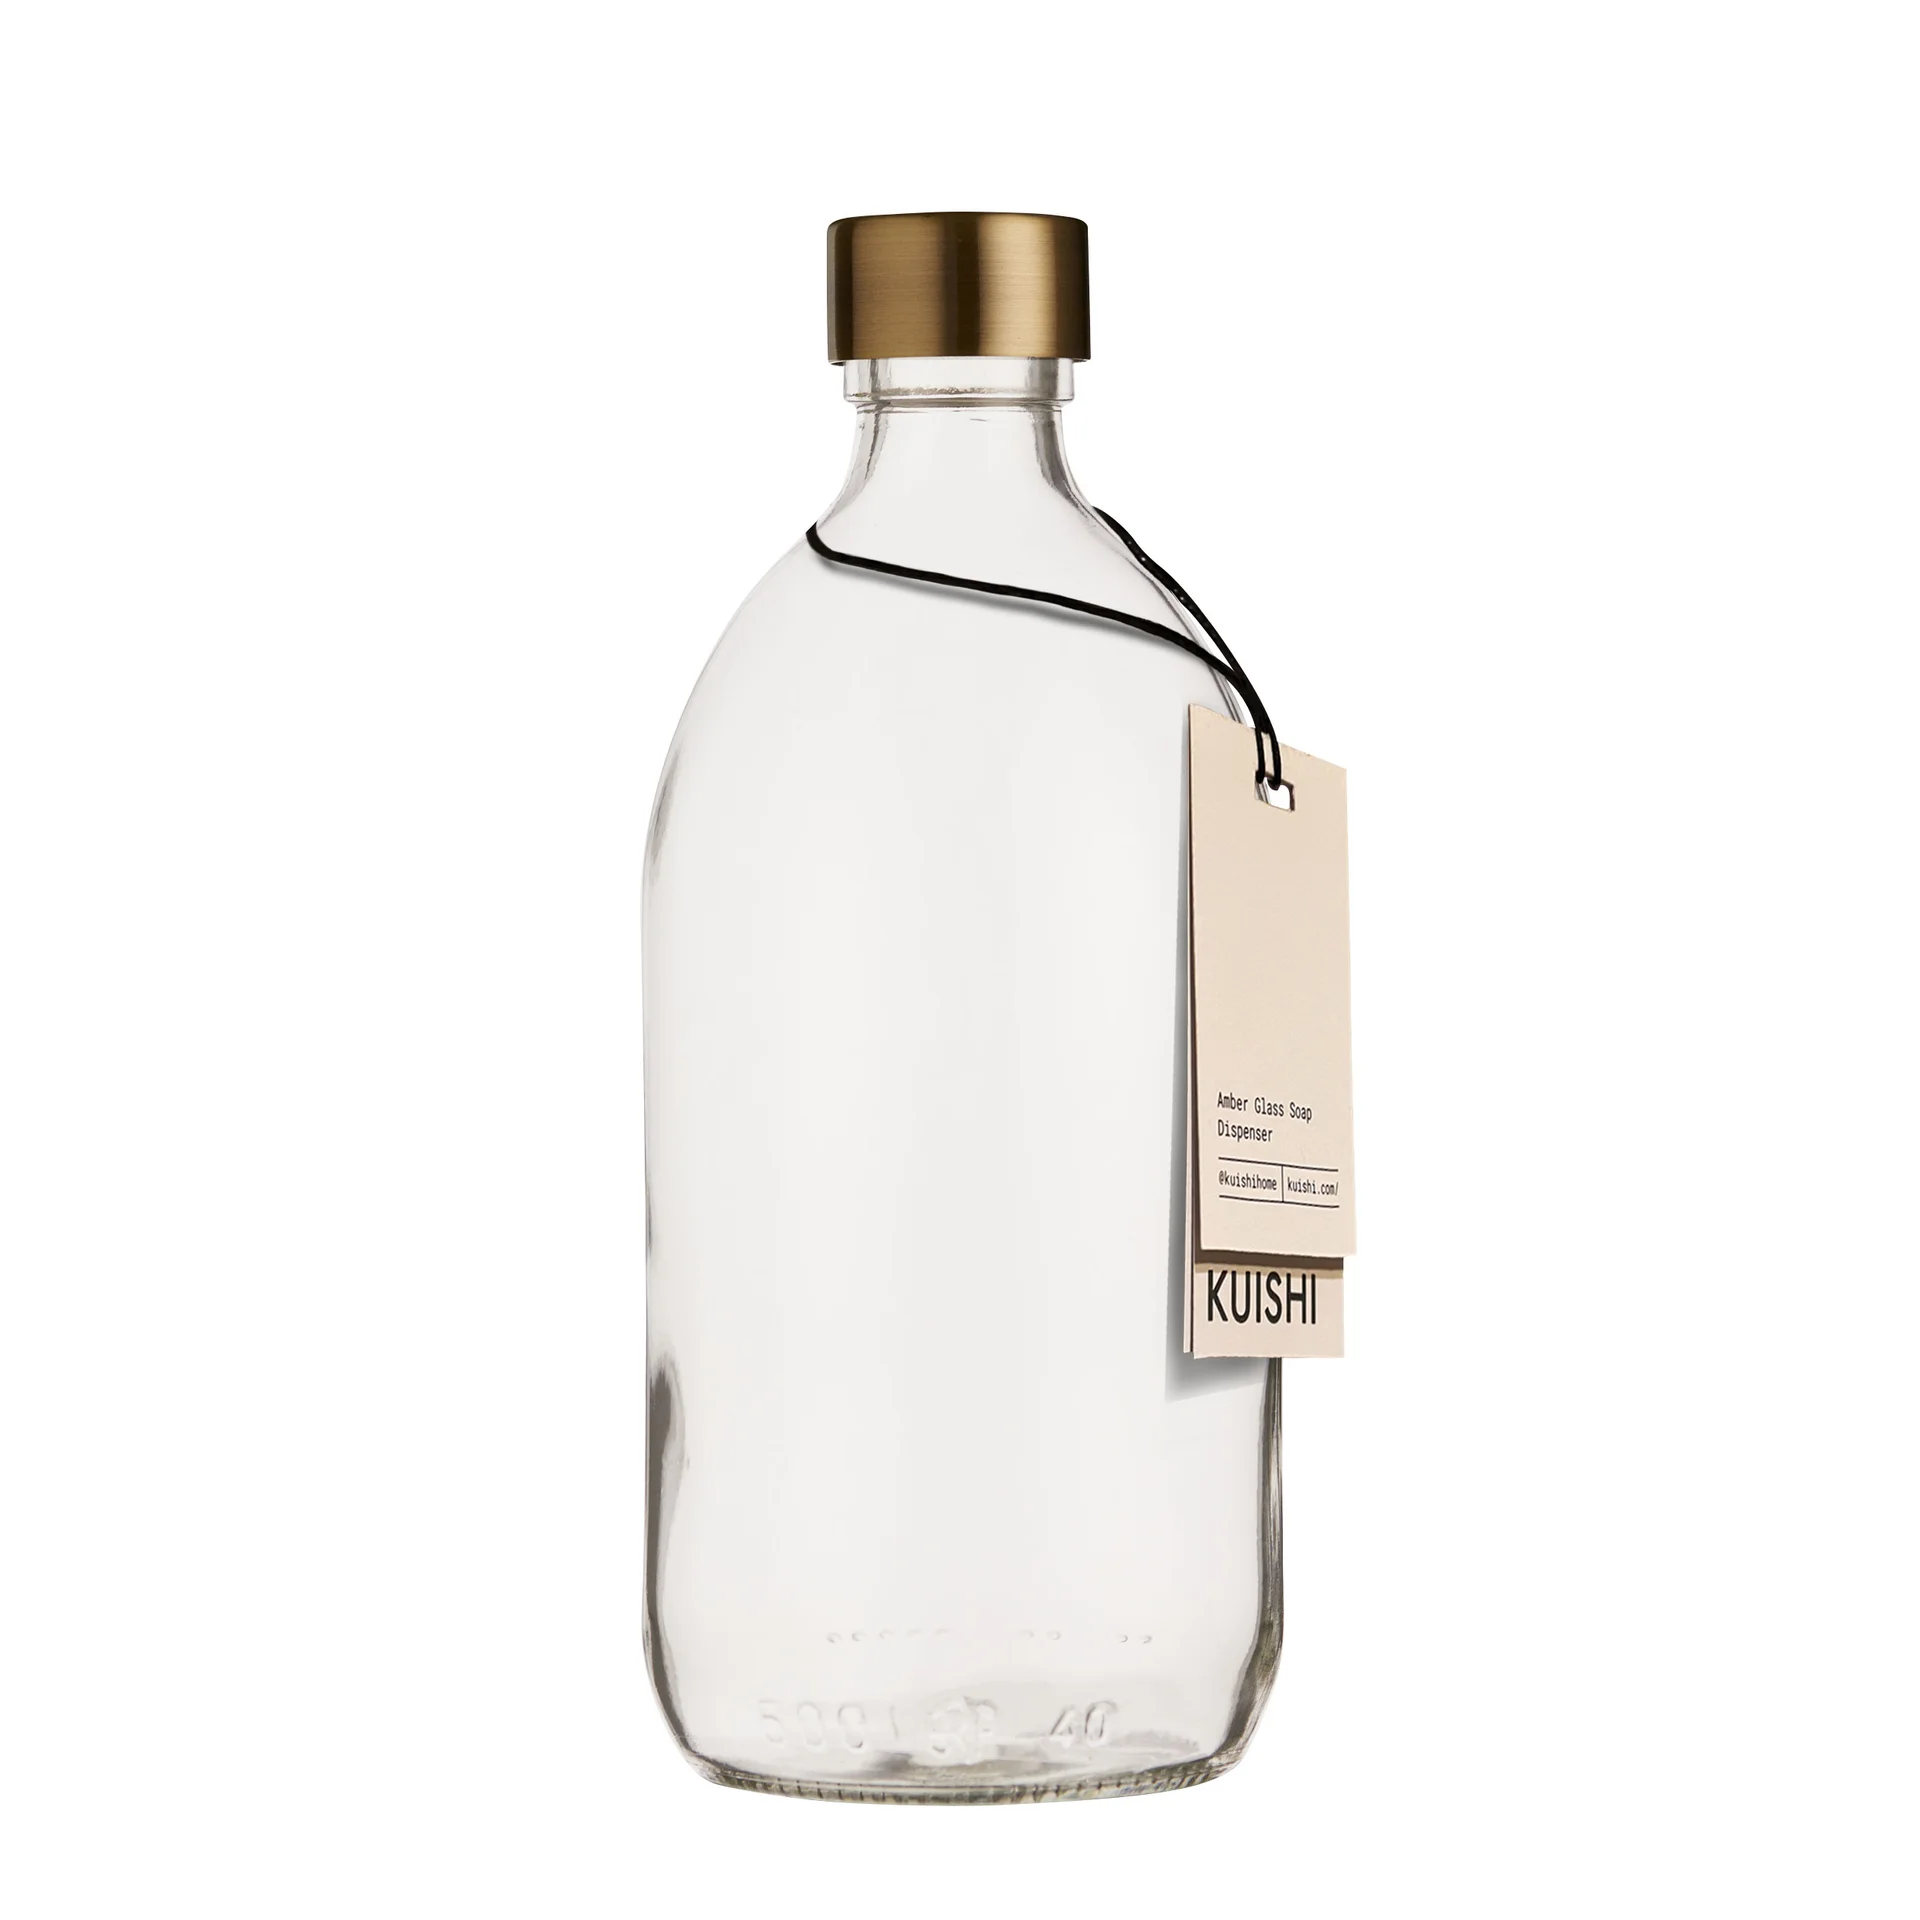 Flasche und Verschluss aus klarem Glas